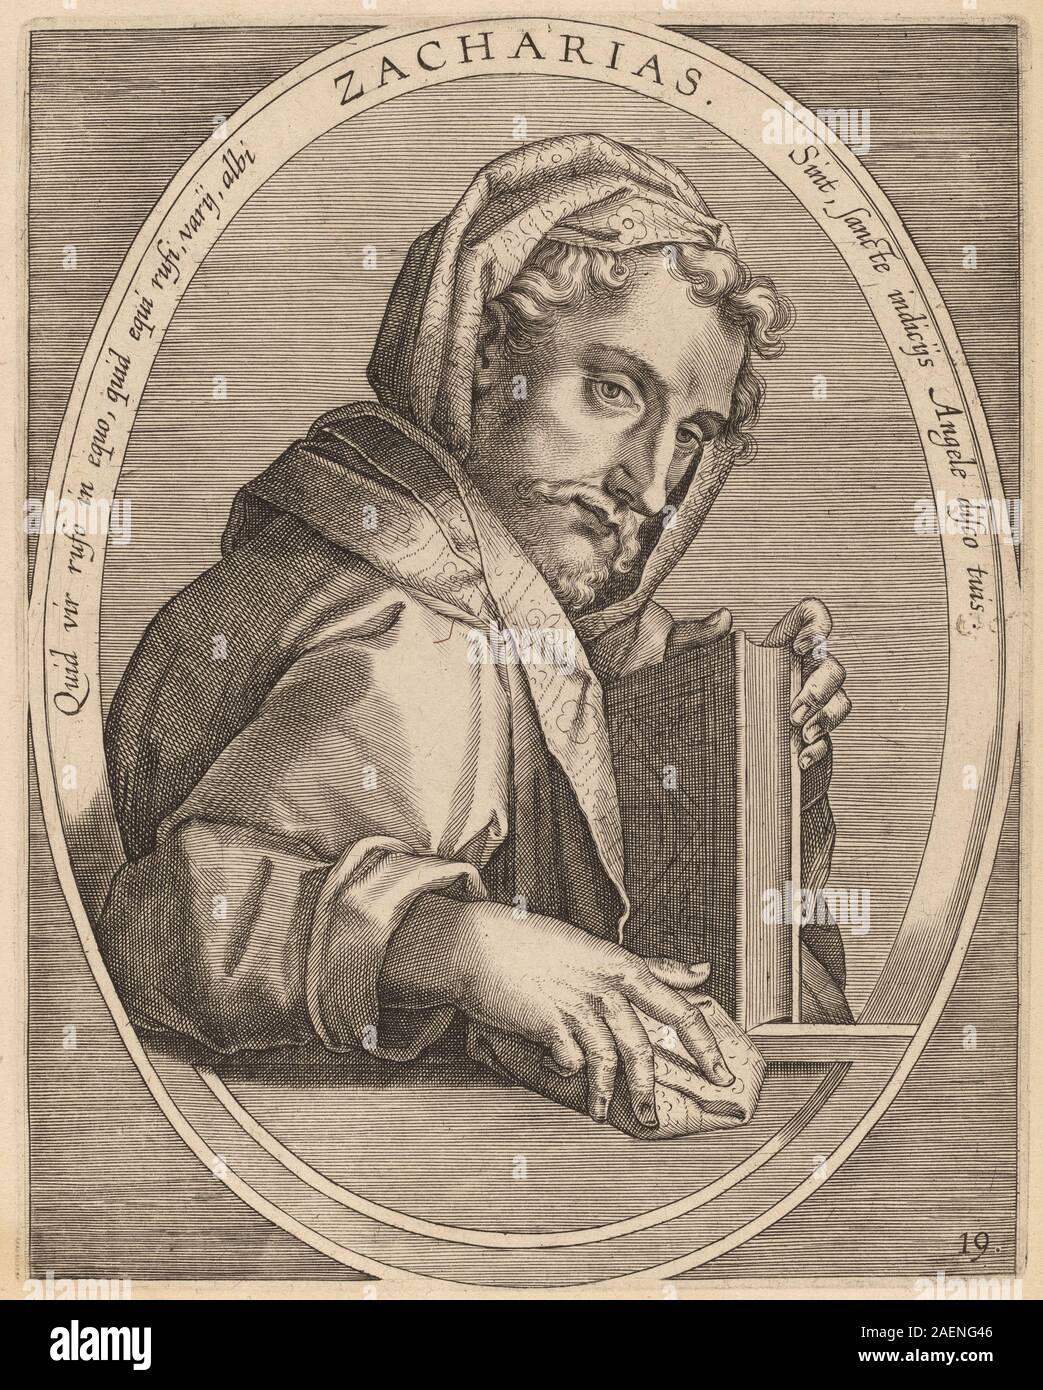 Theodor Galle after Jan van der Straet, Zaccarias, published 1613, Zaccarias; published 1613 Stock Photo